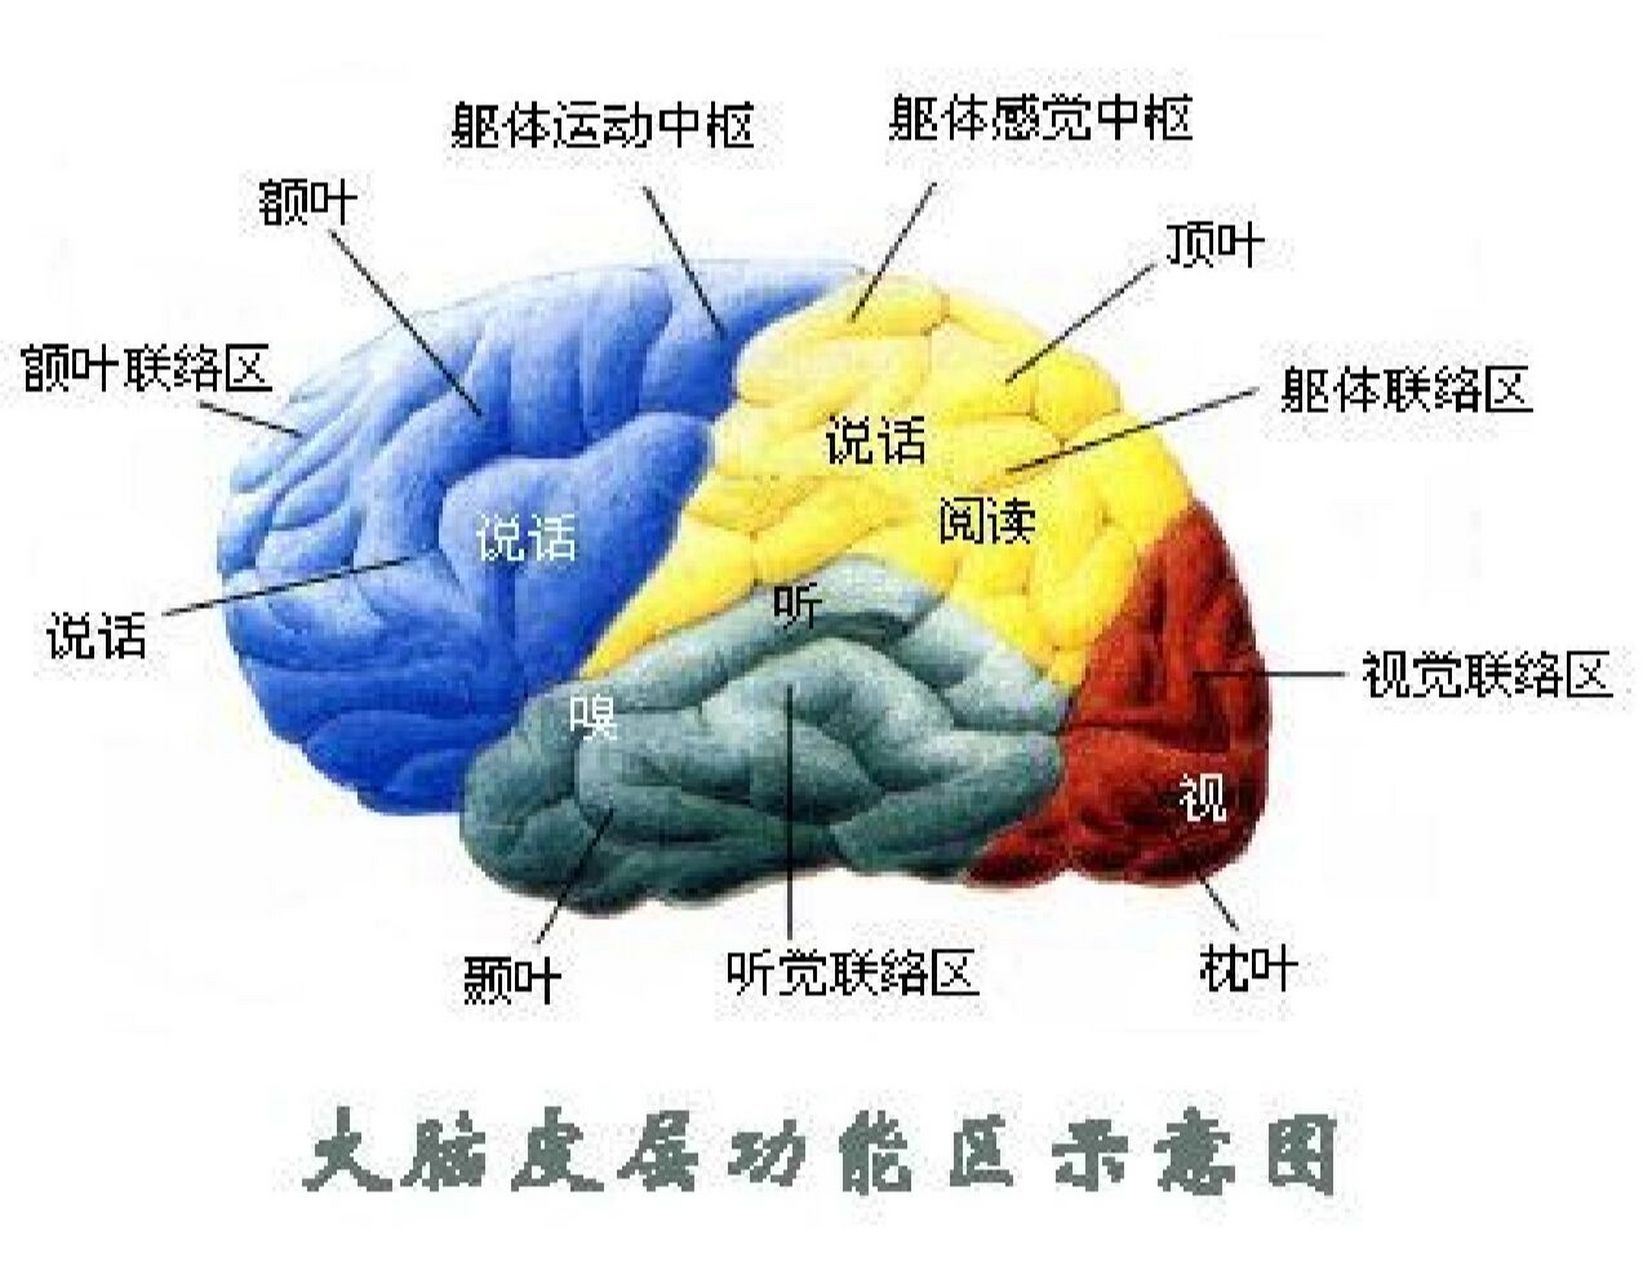 大脑的功能定位 大脑的功能定位: 1,额叶(脑门儿)——管理记忆和决策